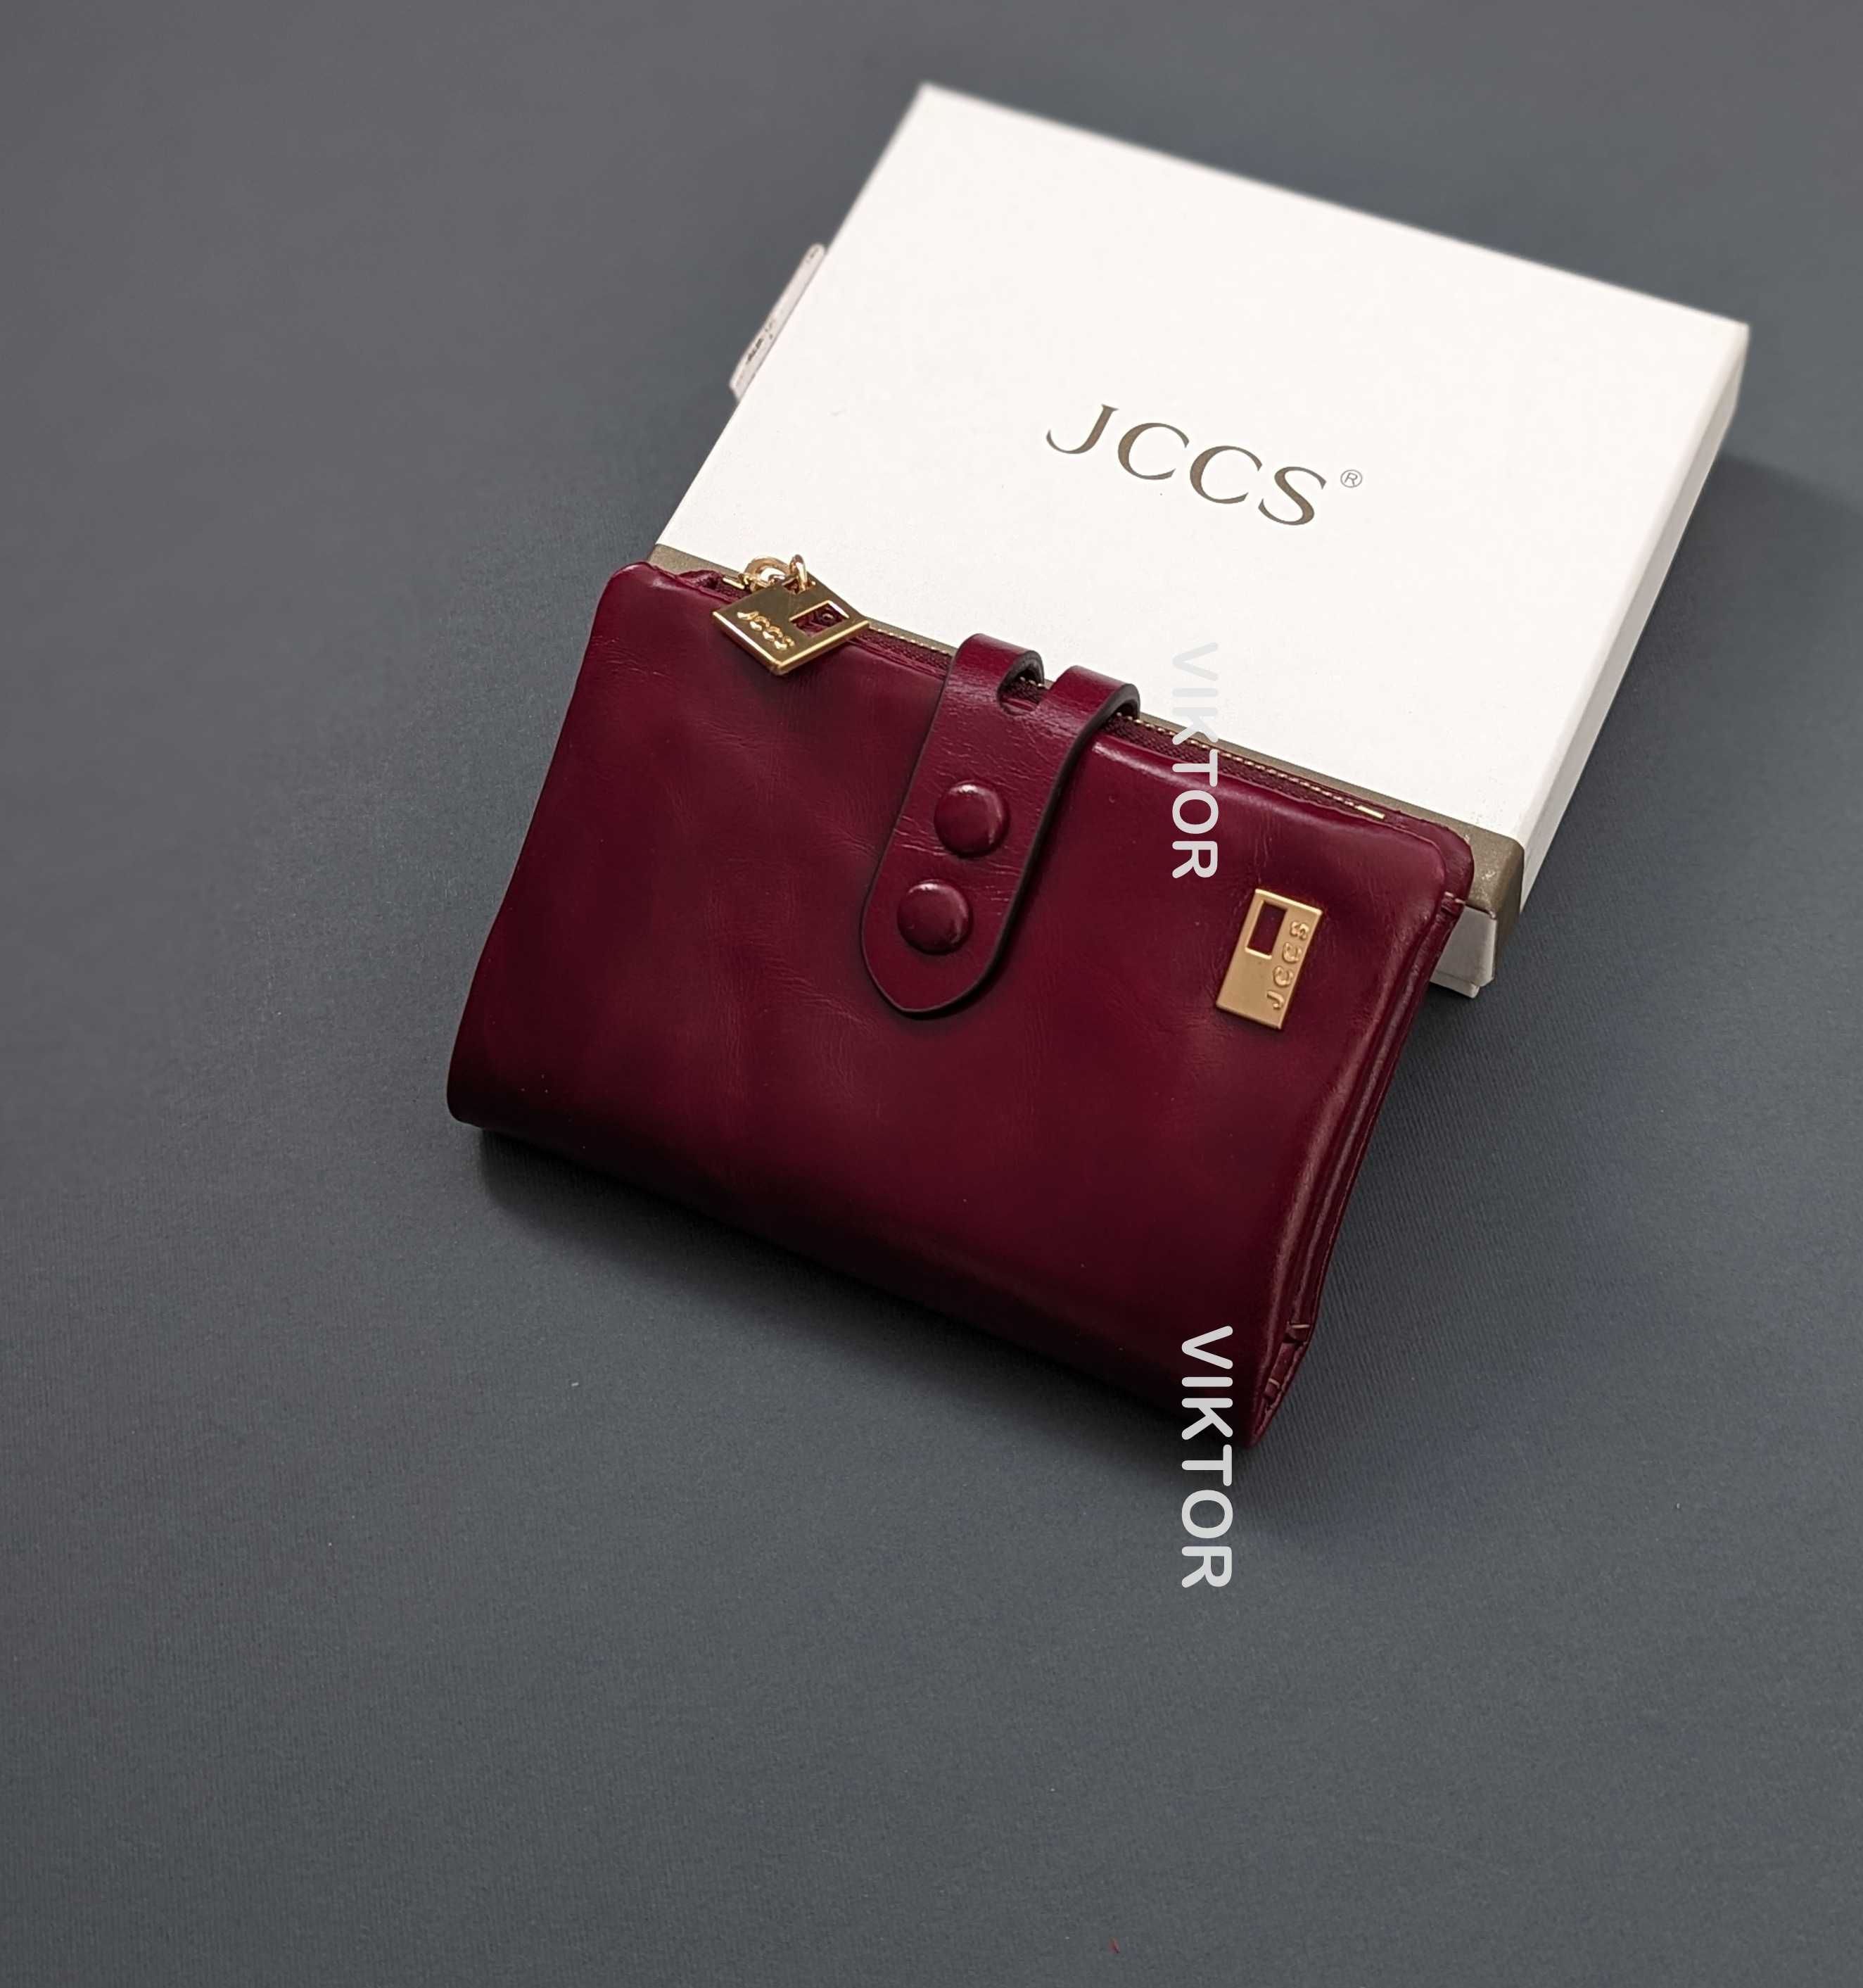 Кожаный женский маленький красивый кошелек JCCS. Разные цвета.